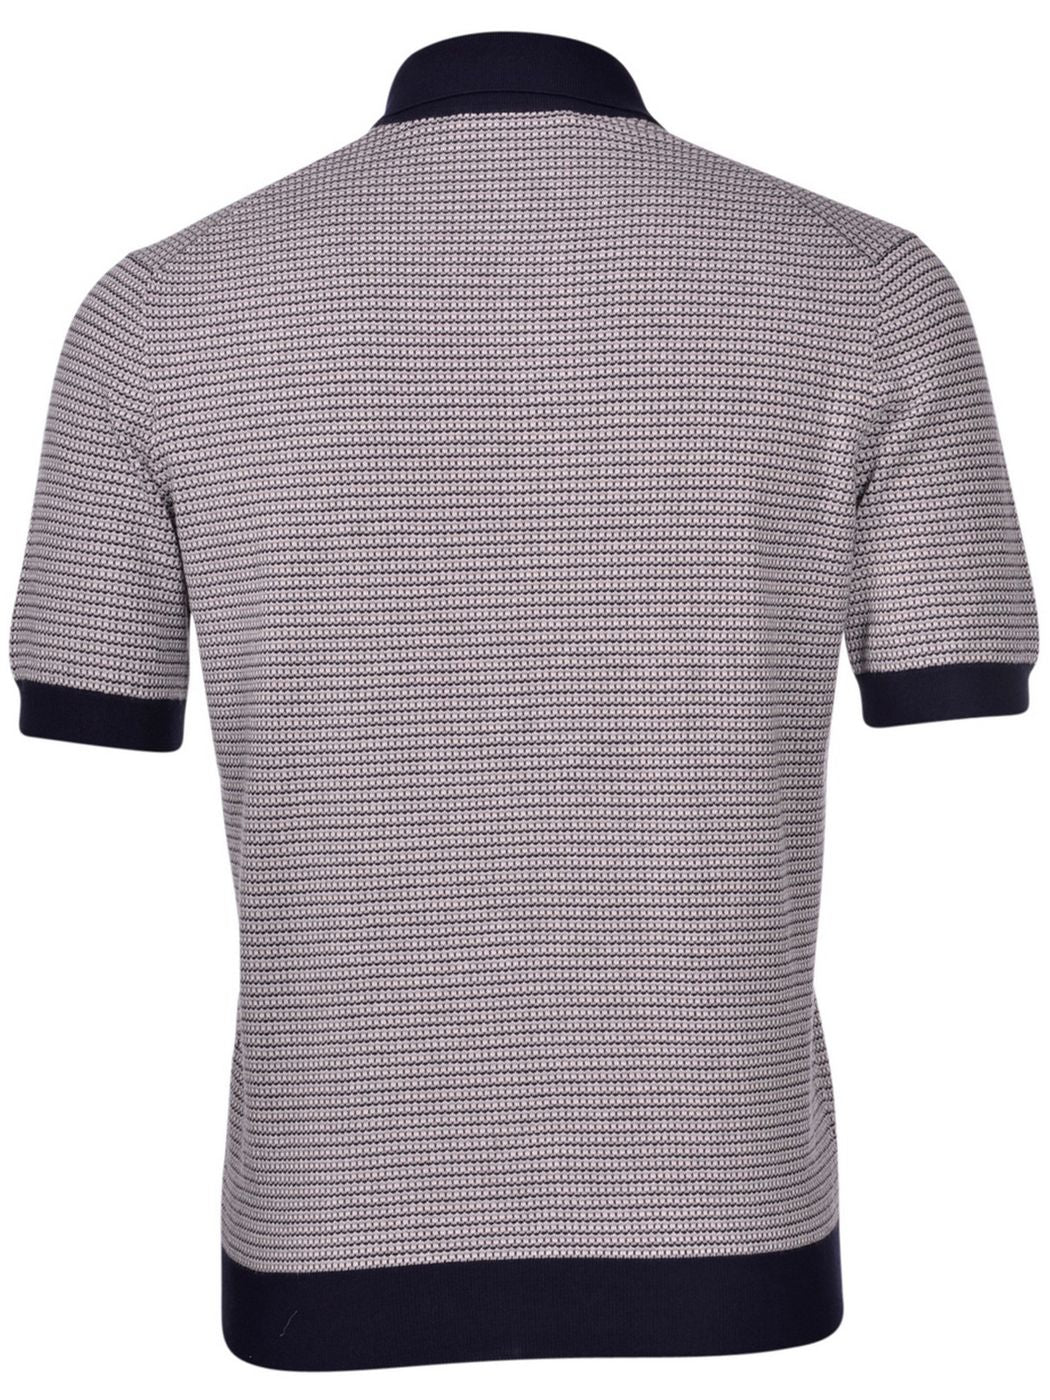 GRAN SASSO T-Shirt e Polo Uomo  43159/20732 Blu